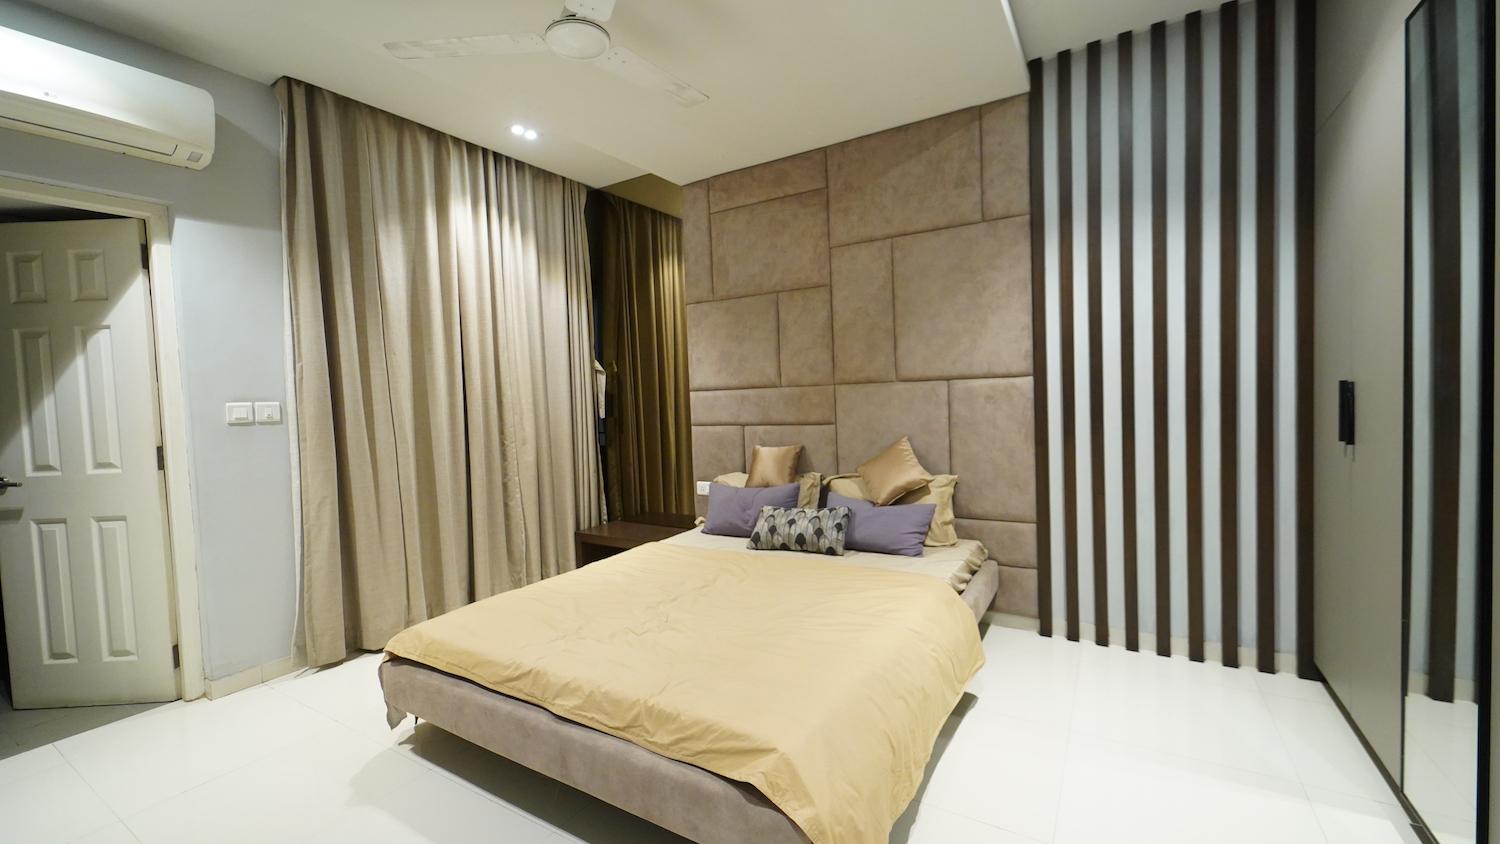 04 bedroom 5 - Smart Apartment Homes by Akshaya in Thoraipakkam - OMR